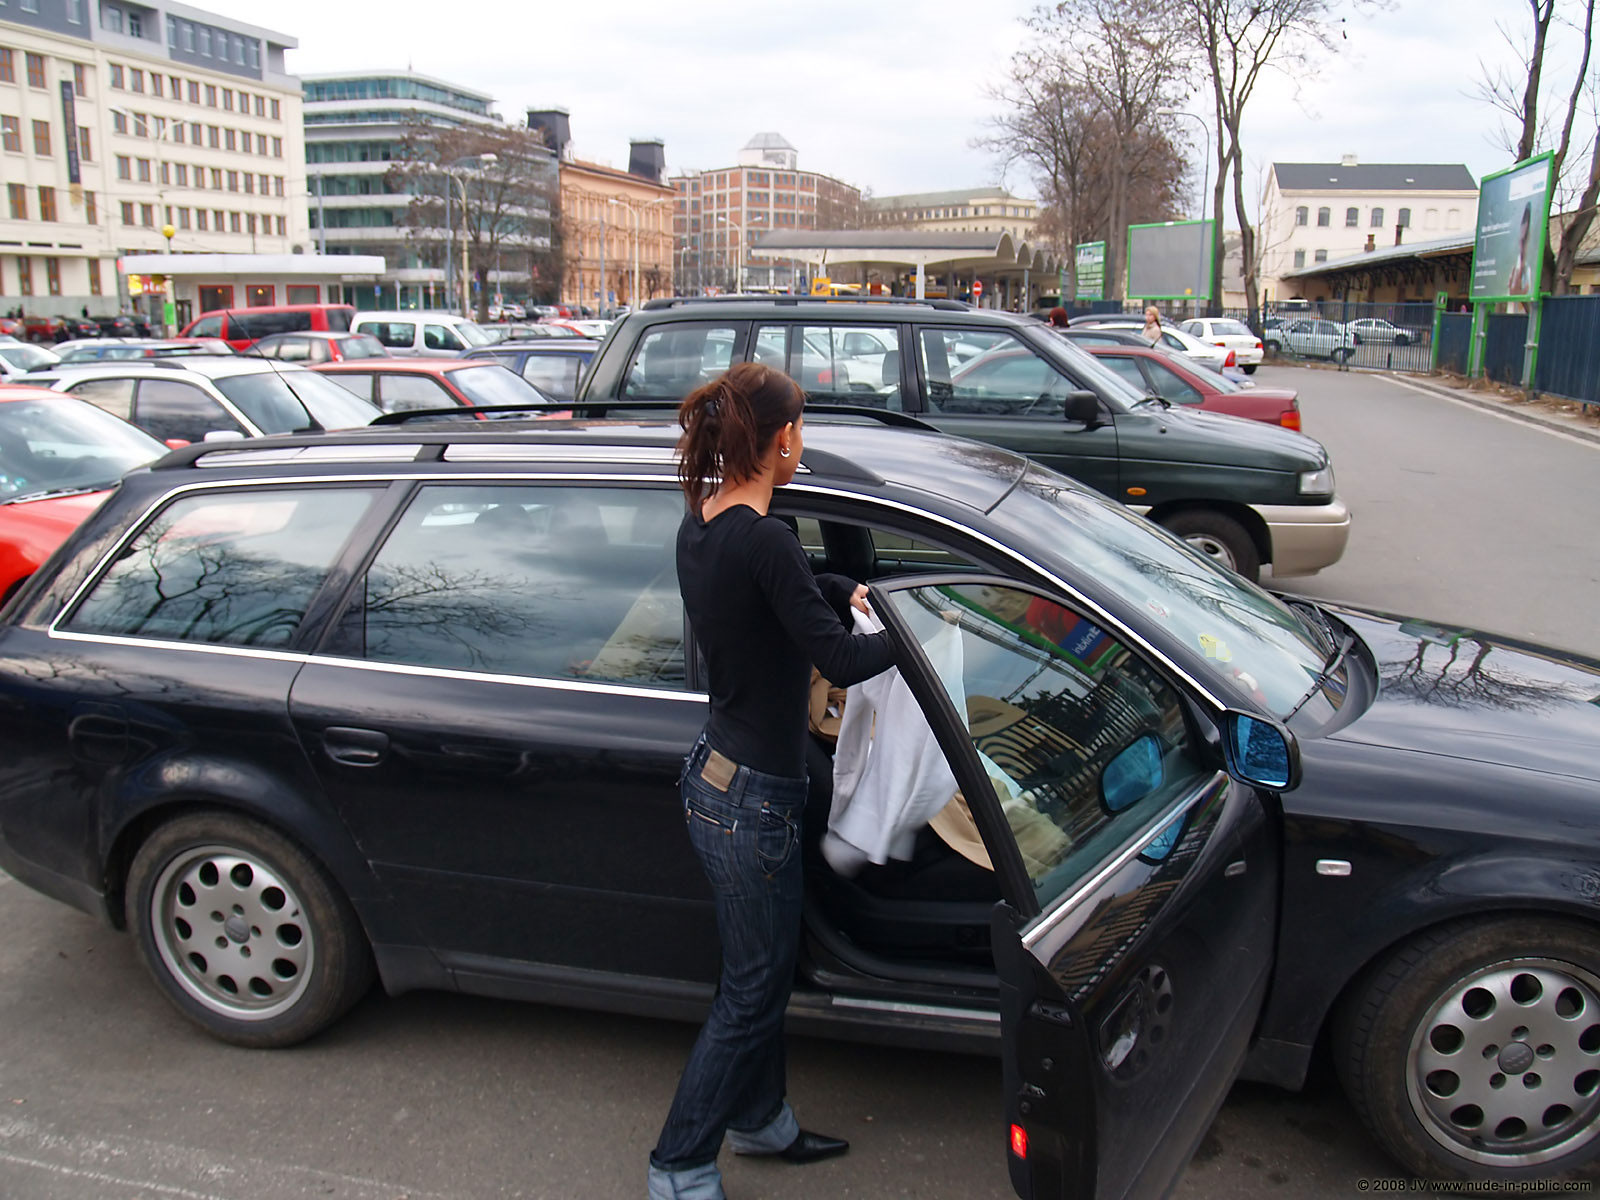 Melisa U Car Audi Flash On Parking Nude In Public 04